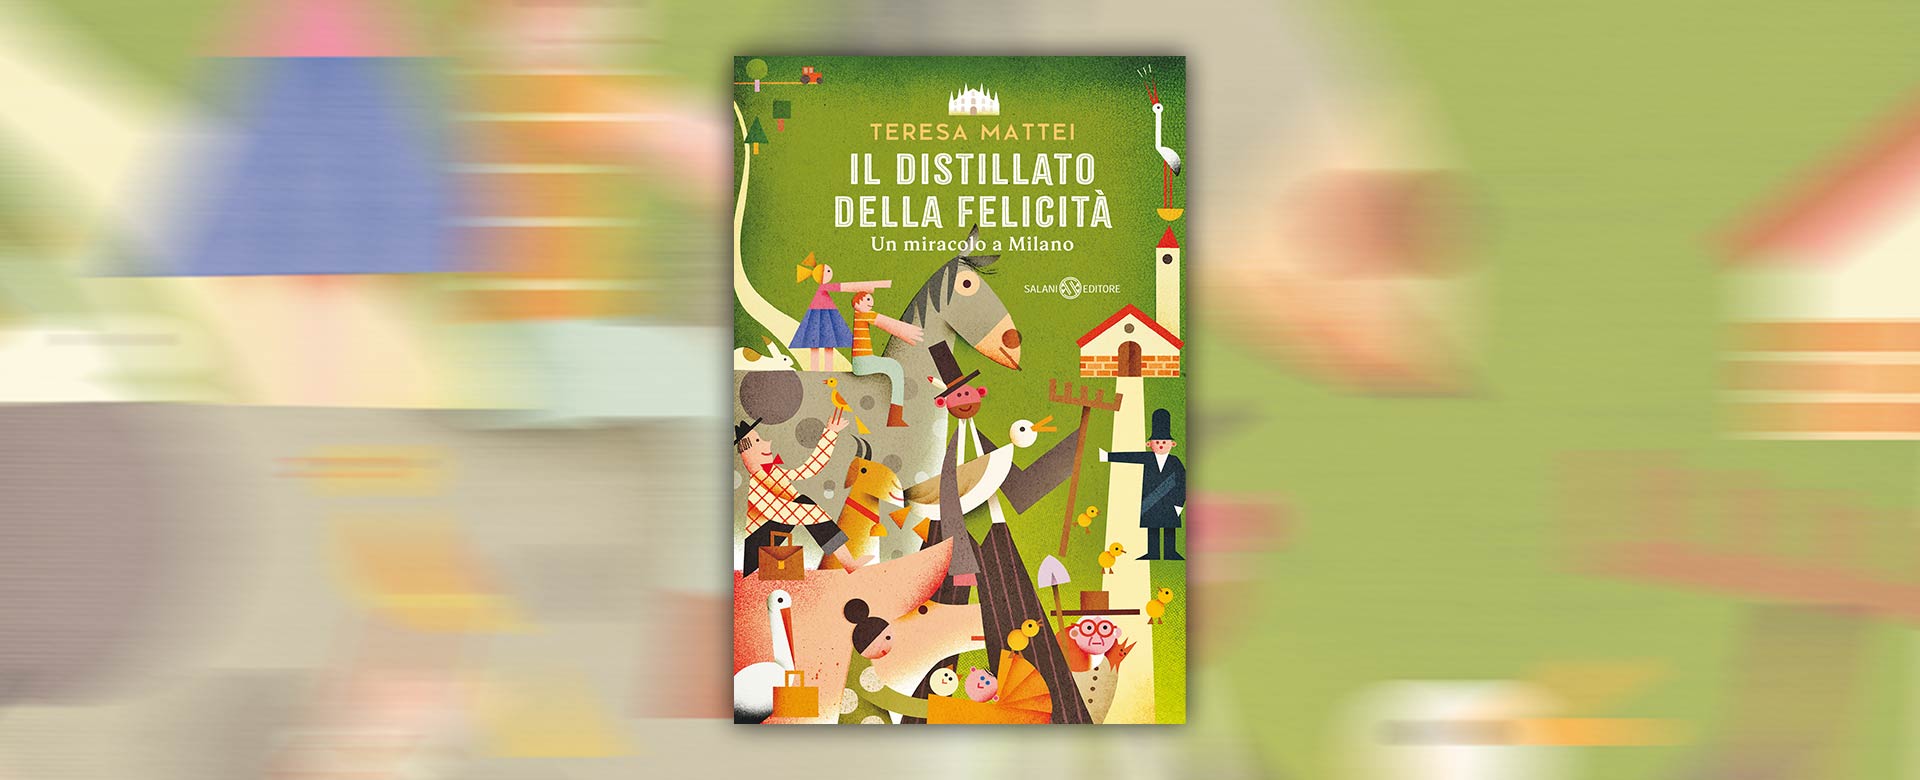 In apertura la copertina del libro Il distillato della felicità, edito da Salani